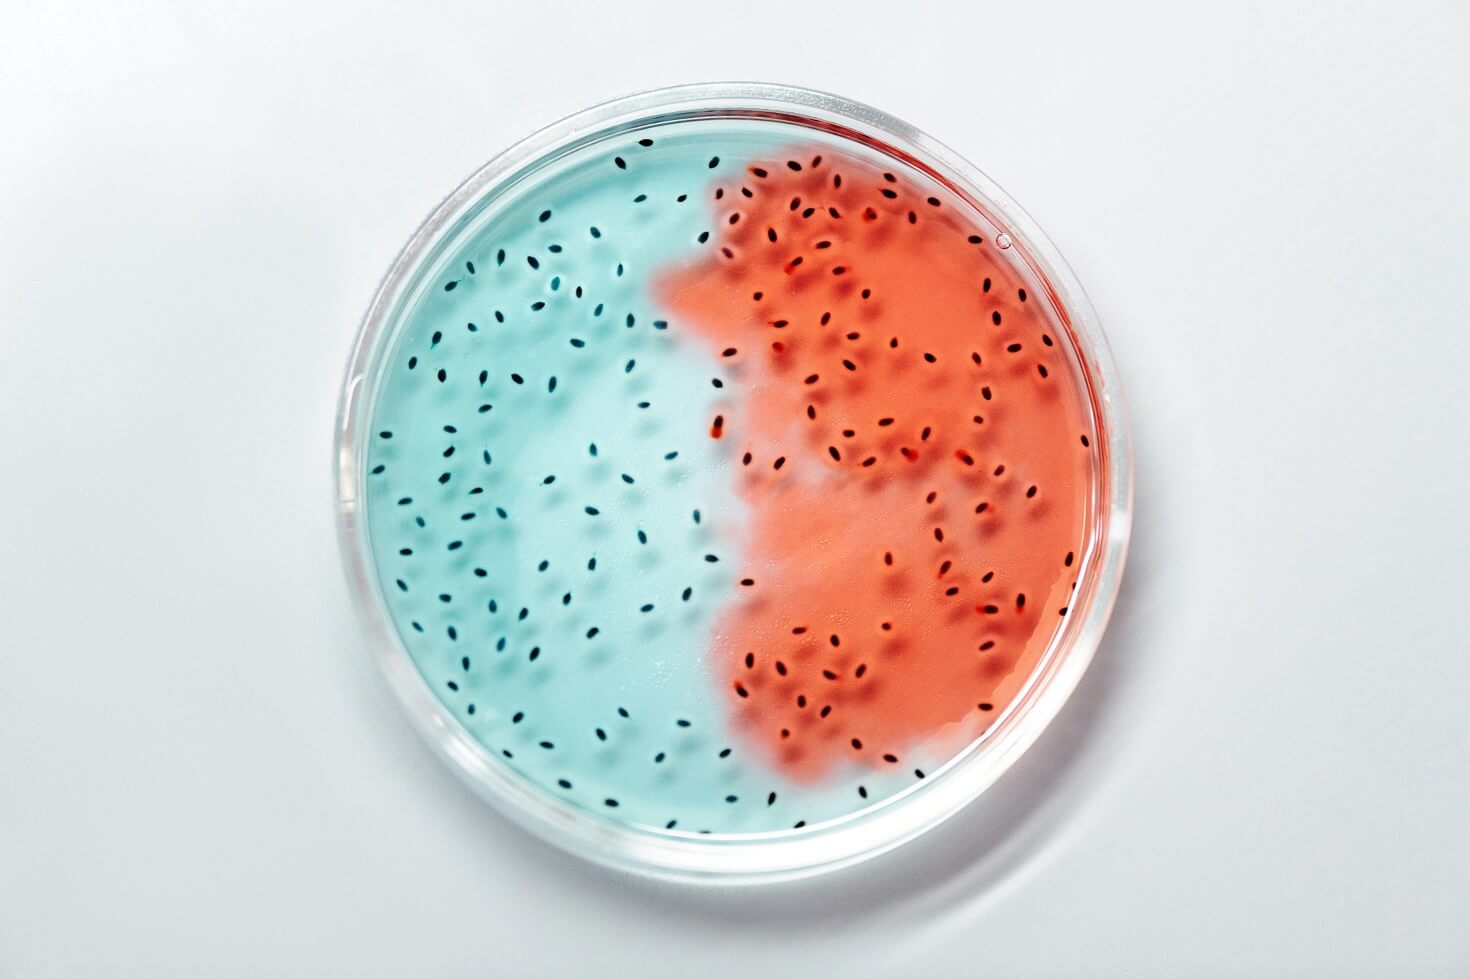 Lactobacillus acidophilus in a petri dish